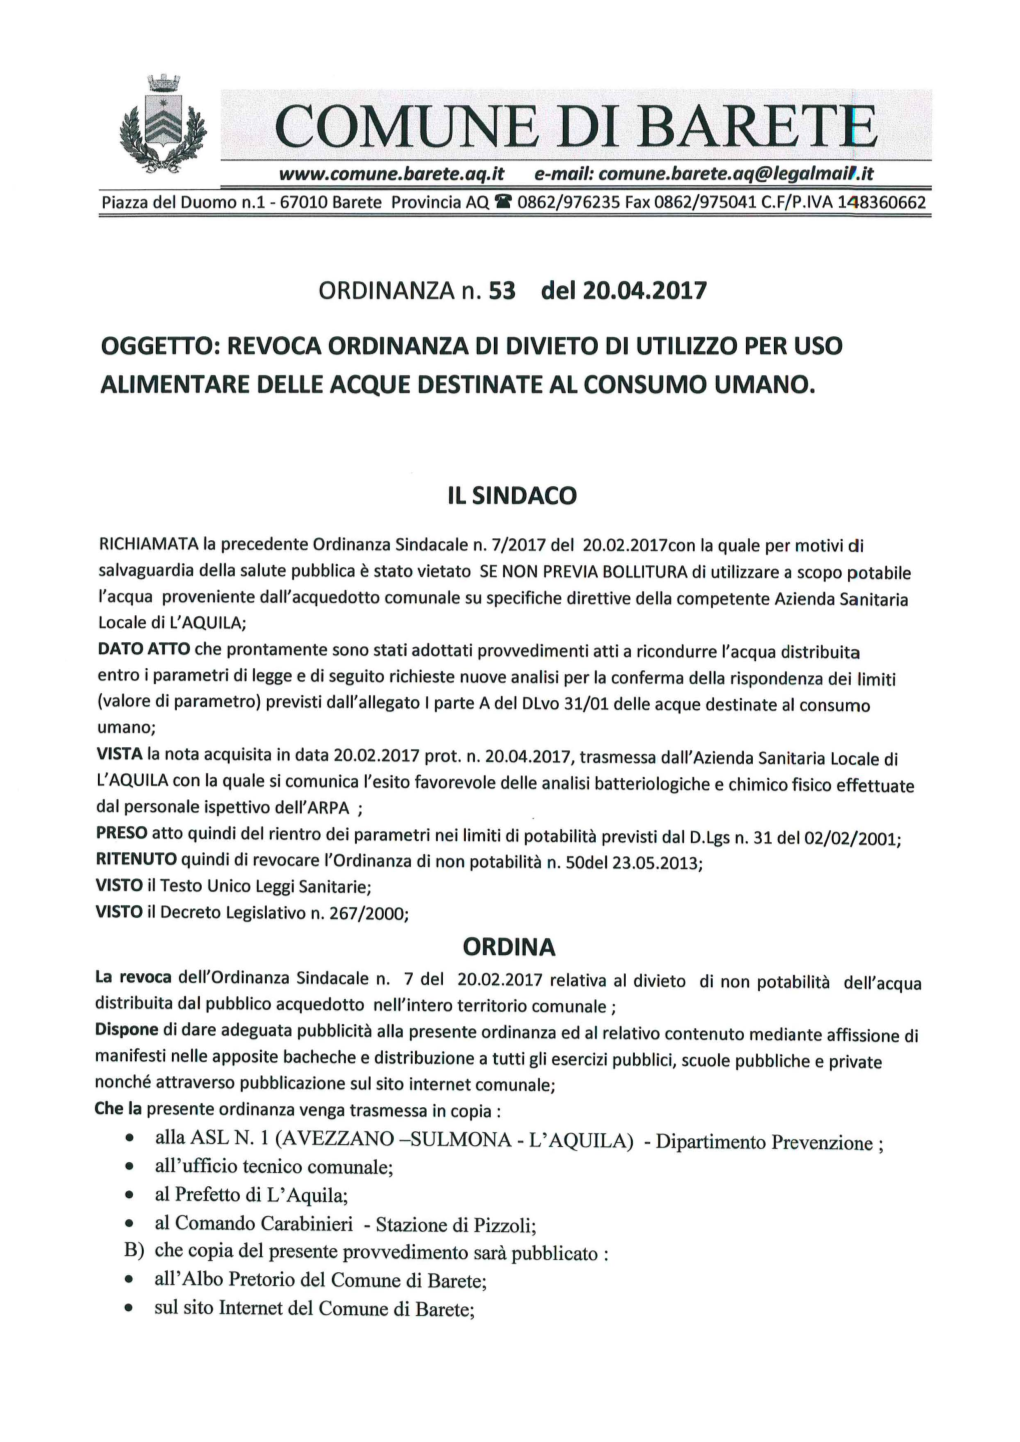 Ordinanza Sindacale N. 7 Del 20.02.2017